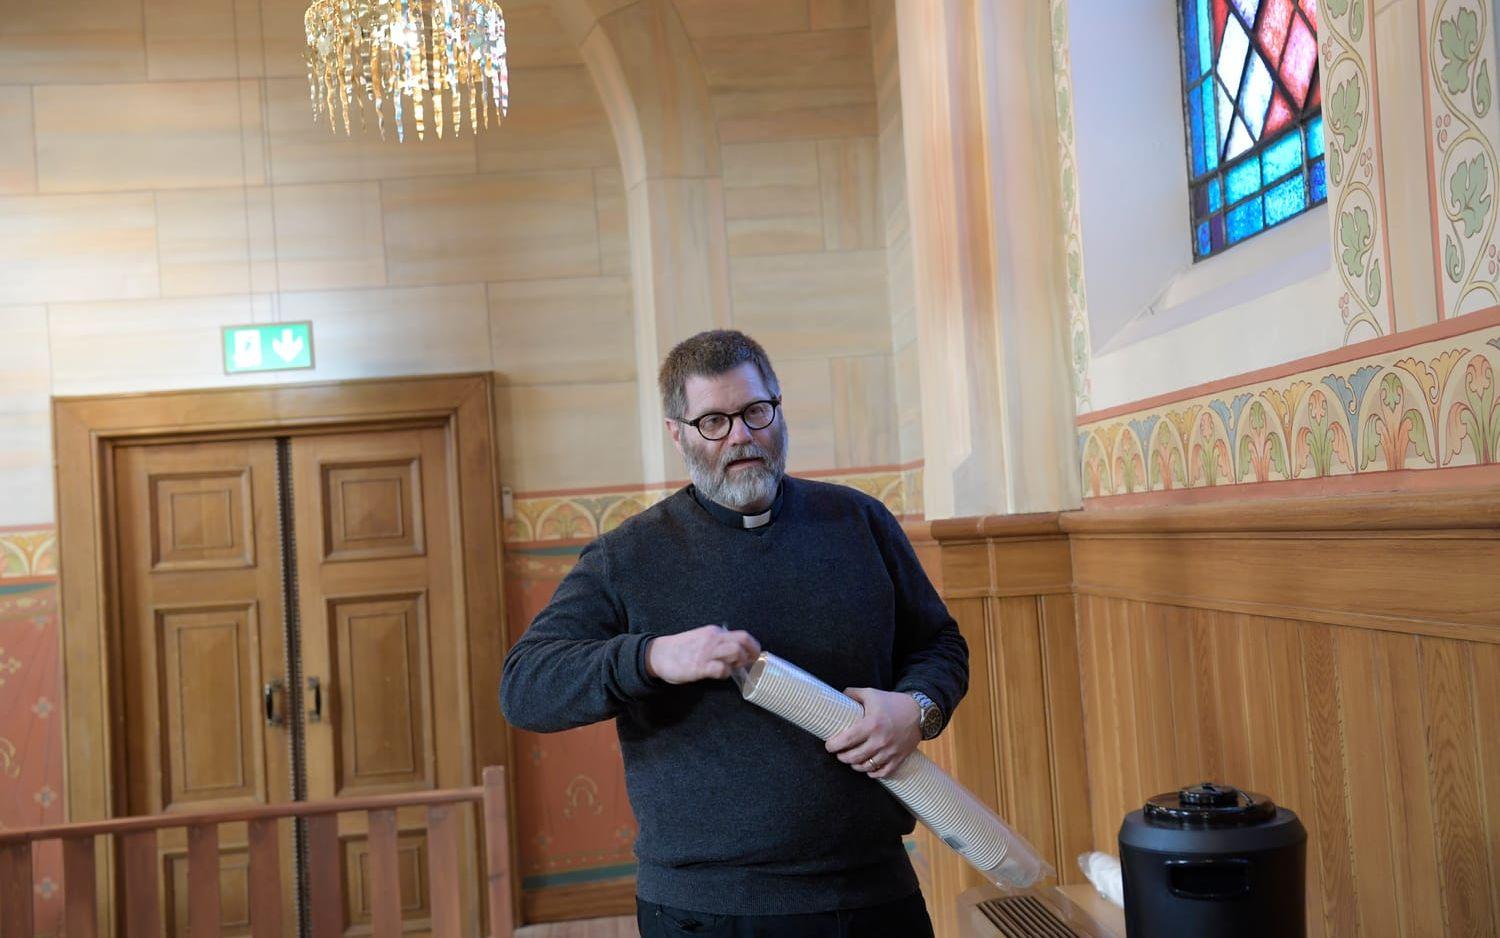 ”Om man befinner sig i sorg så behöver en lite varmt och lite sött”, säger Anders Friberg, präst i St Paulikyrkan, och plockar fram kaffet.